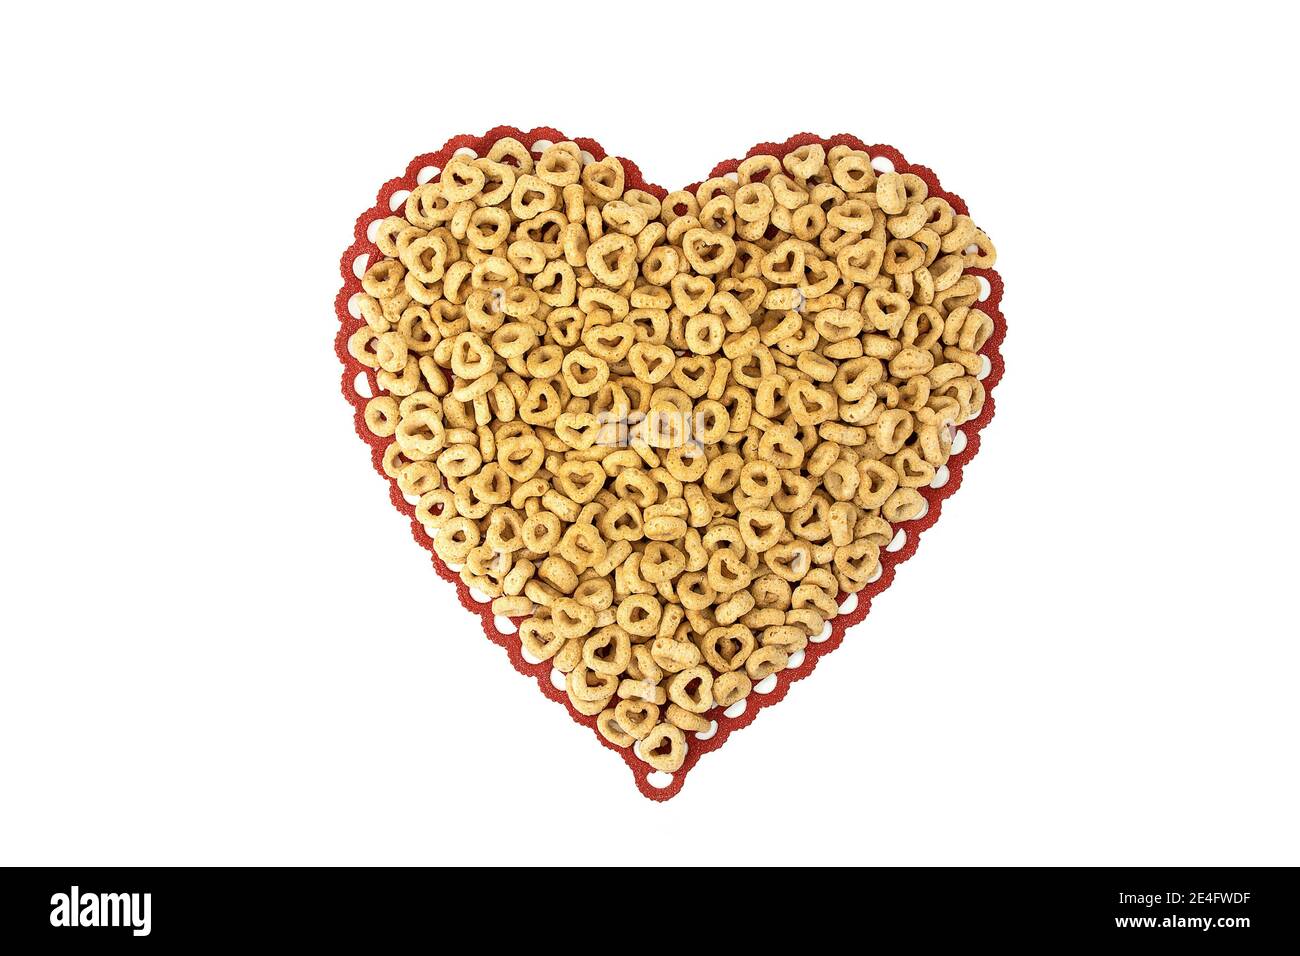 primo piano di cereali per la colazione con cerchi e cuori su rosso merletto cuore isolato doily su bianco Foto Stock